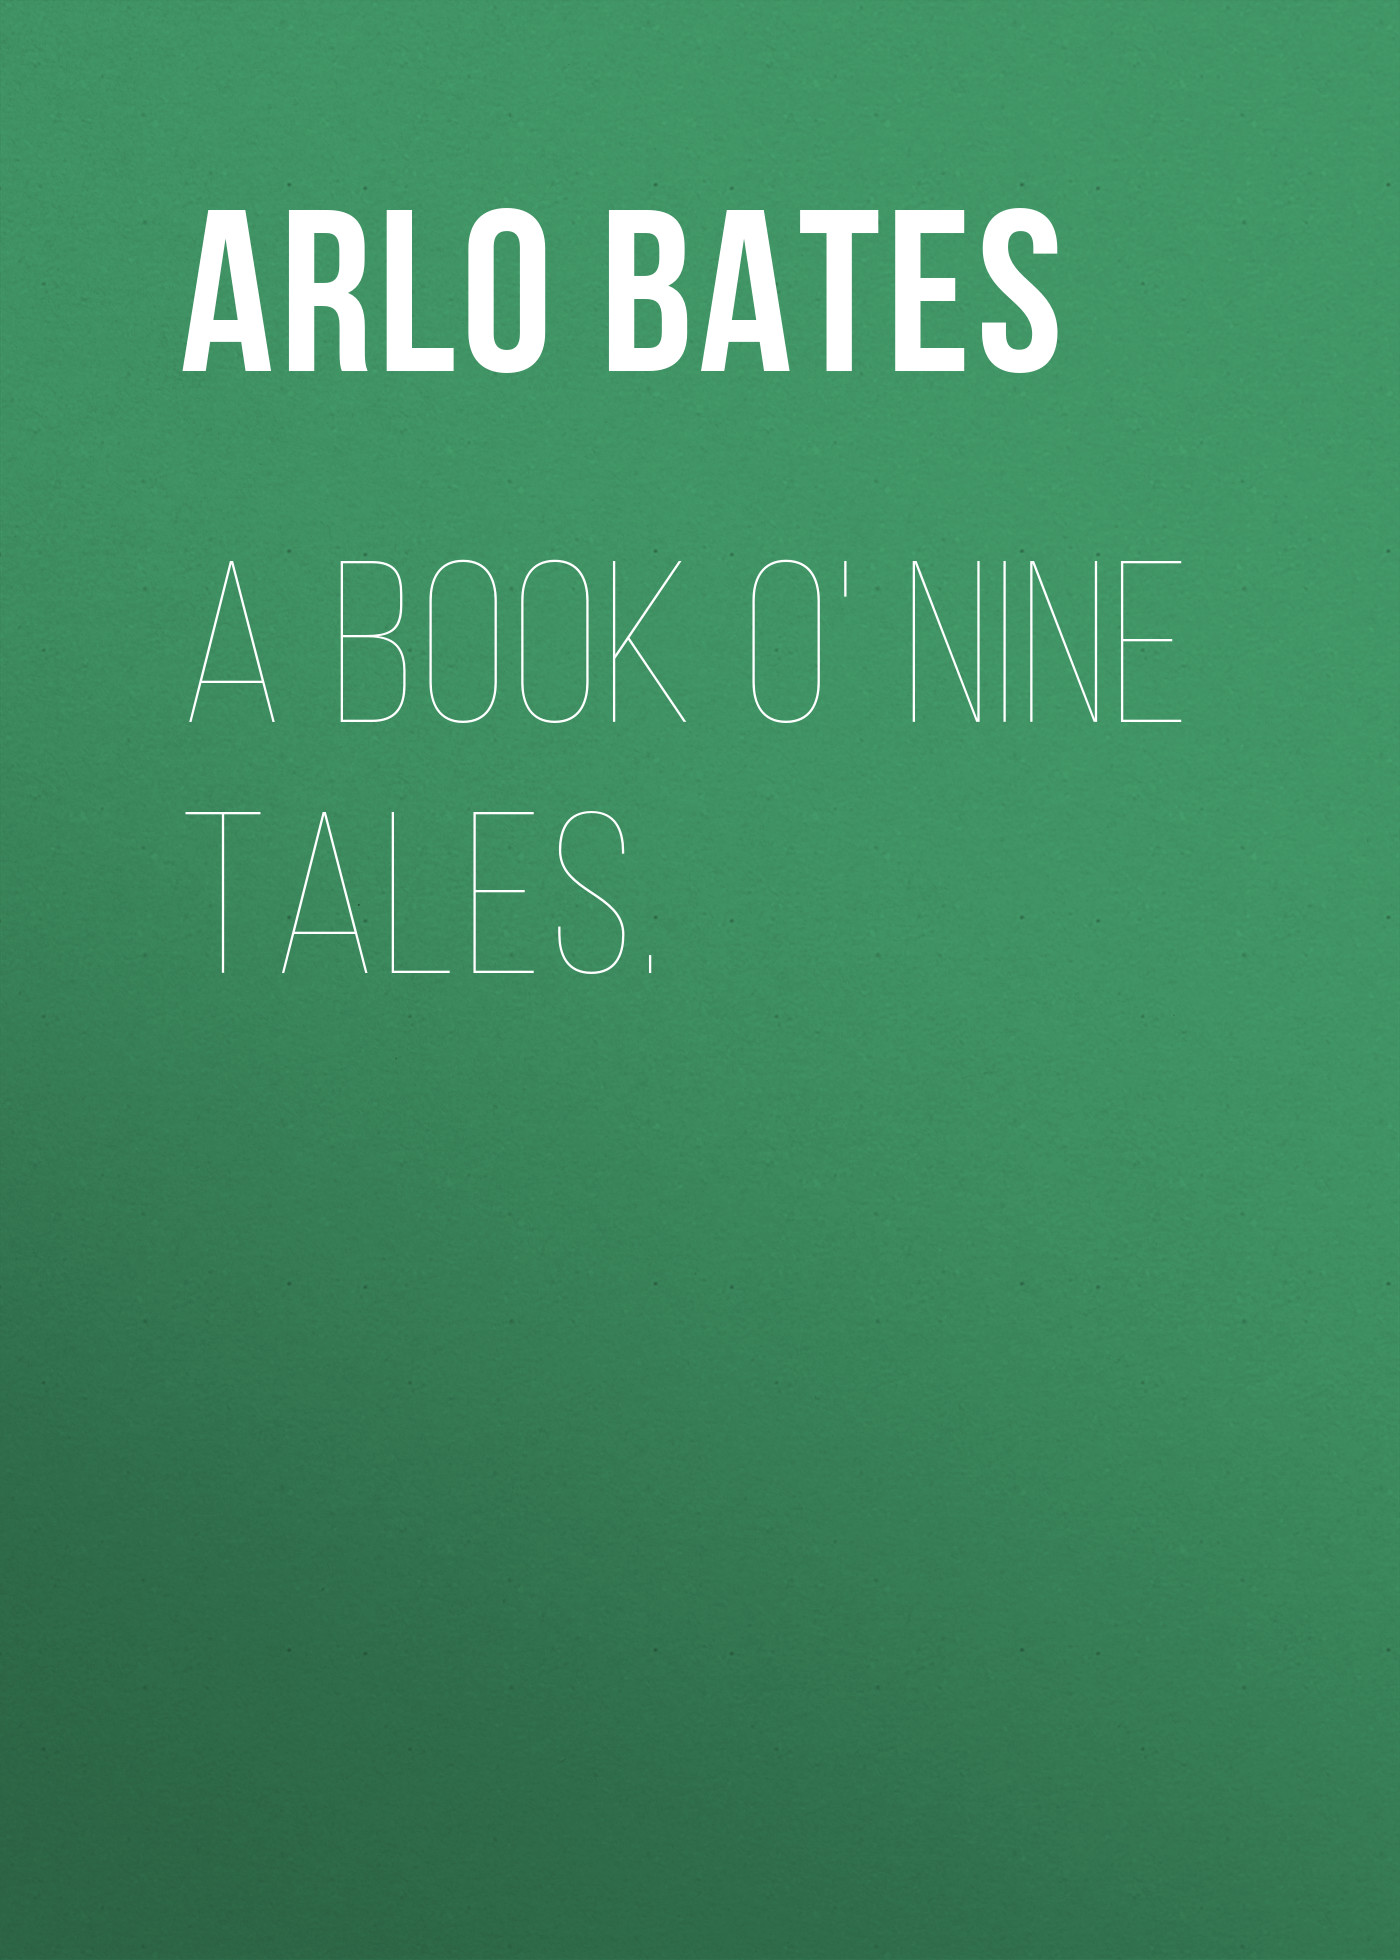 Книга A Book o' Nine Tales. из серии , созданная Arlo Bates, может относится к жанру Зарубежная старинная литература, Зарубежная классика. Стоимость электронной книги A Book o' Nine Tales. с идентификатором 24168164 составляет 0.90 руб.